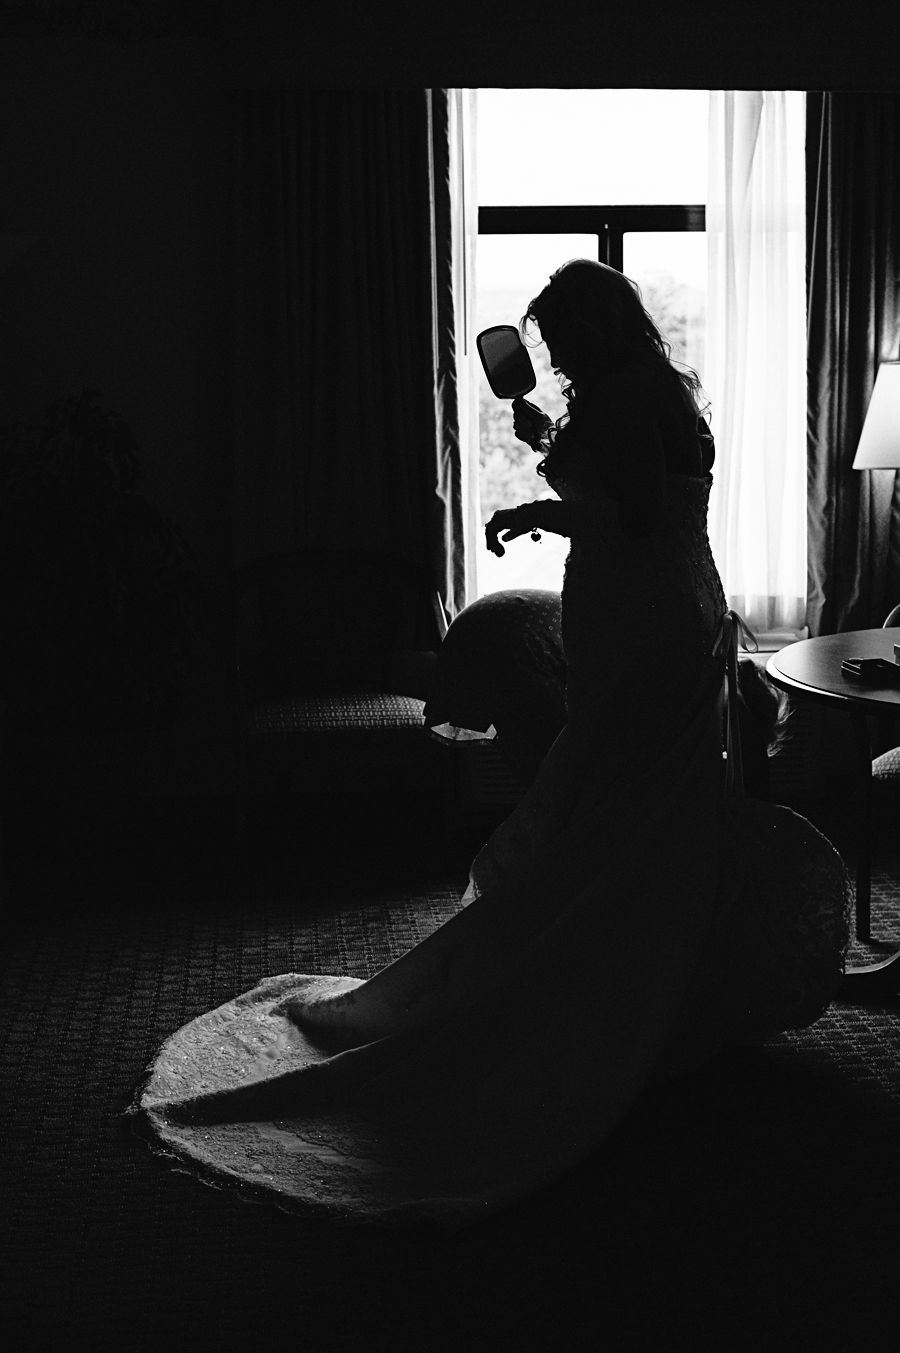 Bride Silhouette